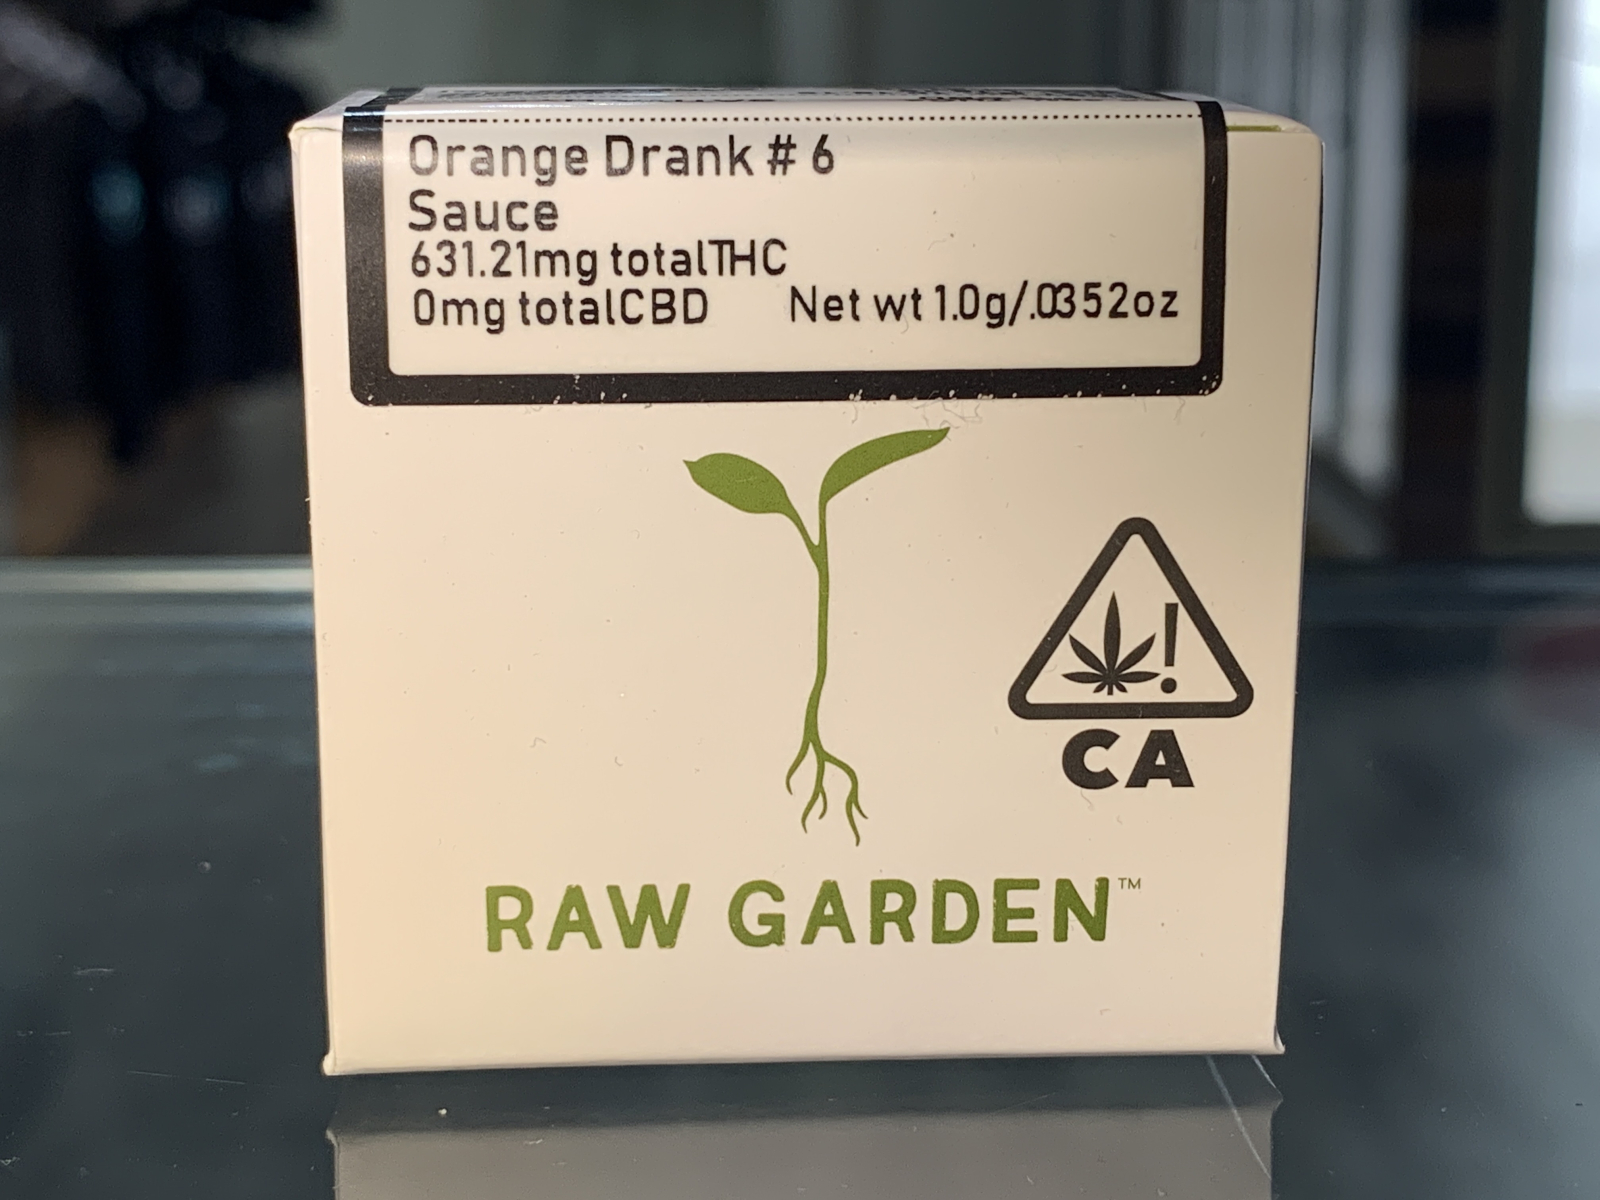 Raw Garden Orange Drank #6 live resin sauce